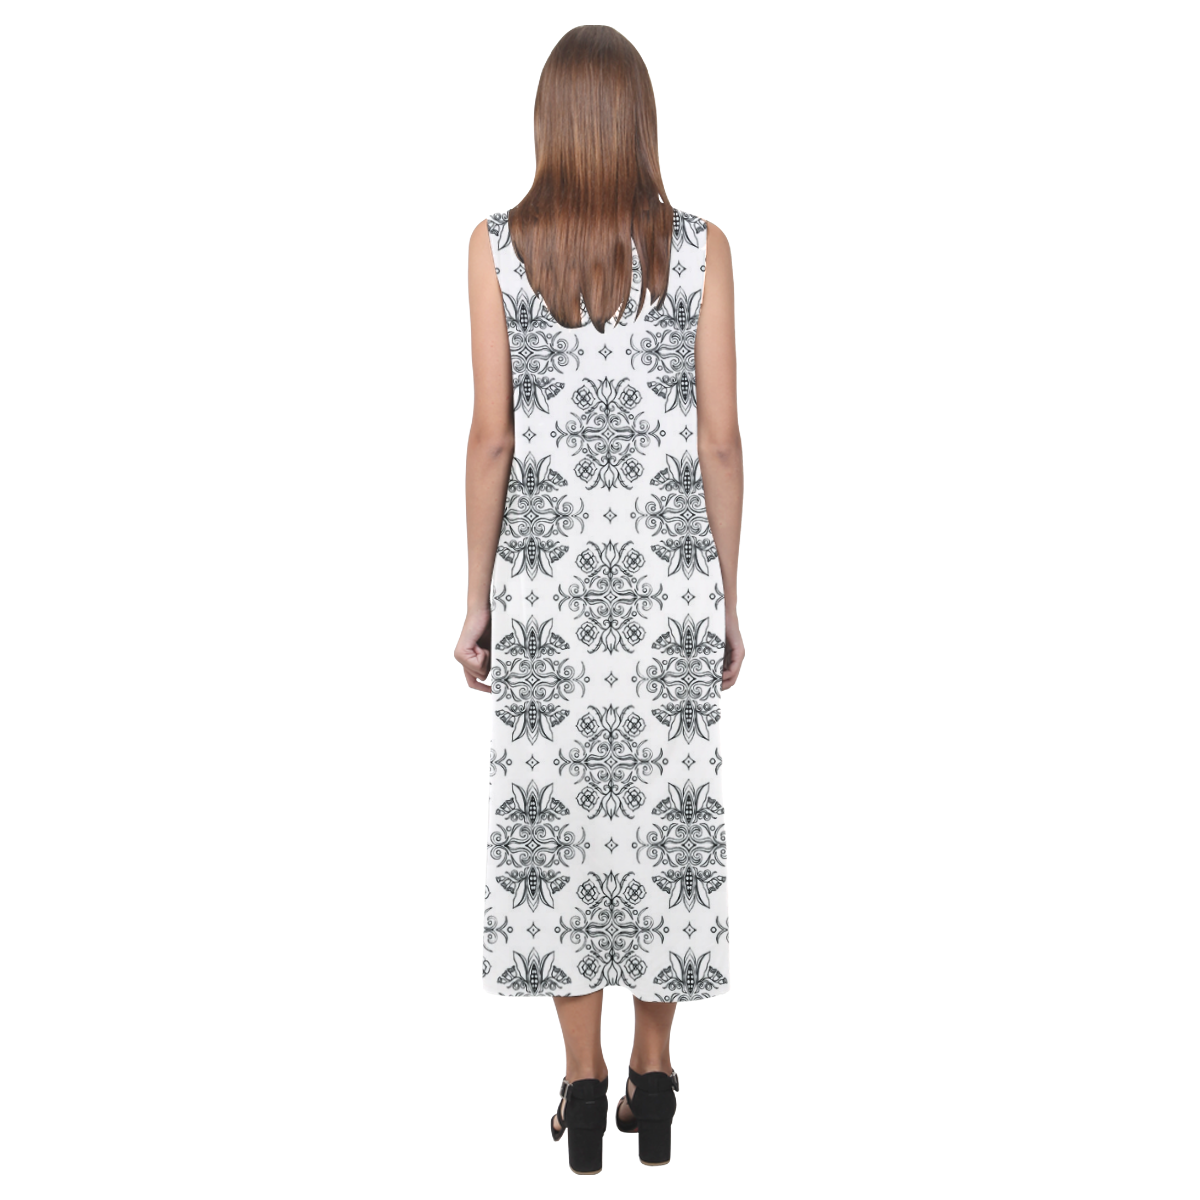 Wall Flower White and Black Drama by Aleta Phaedra Sleeveless Open Fork Long Dress (Model D08)